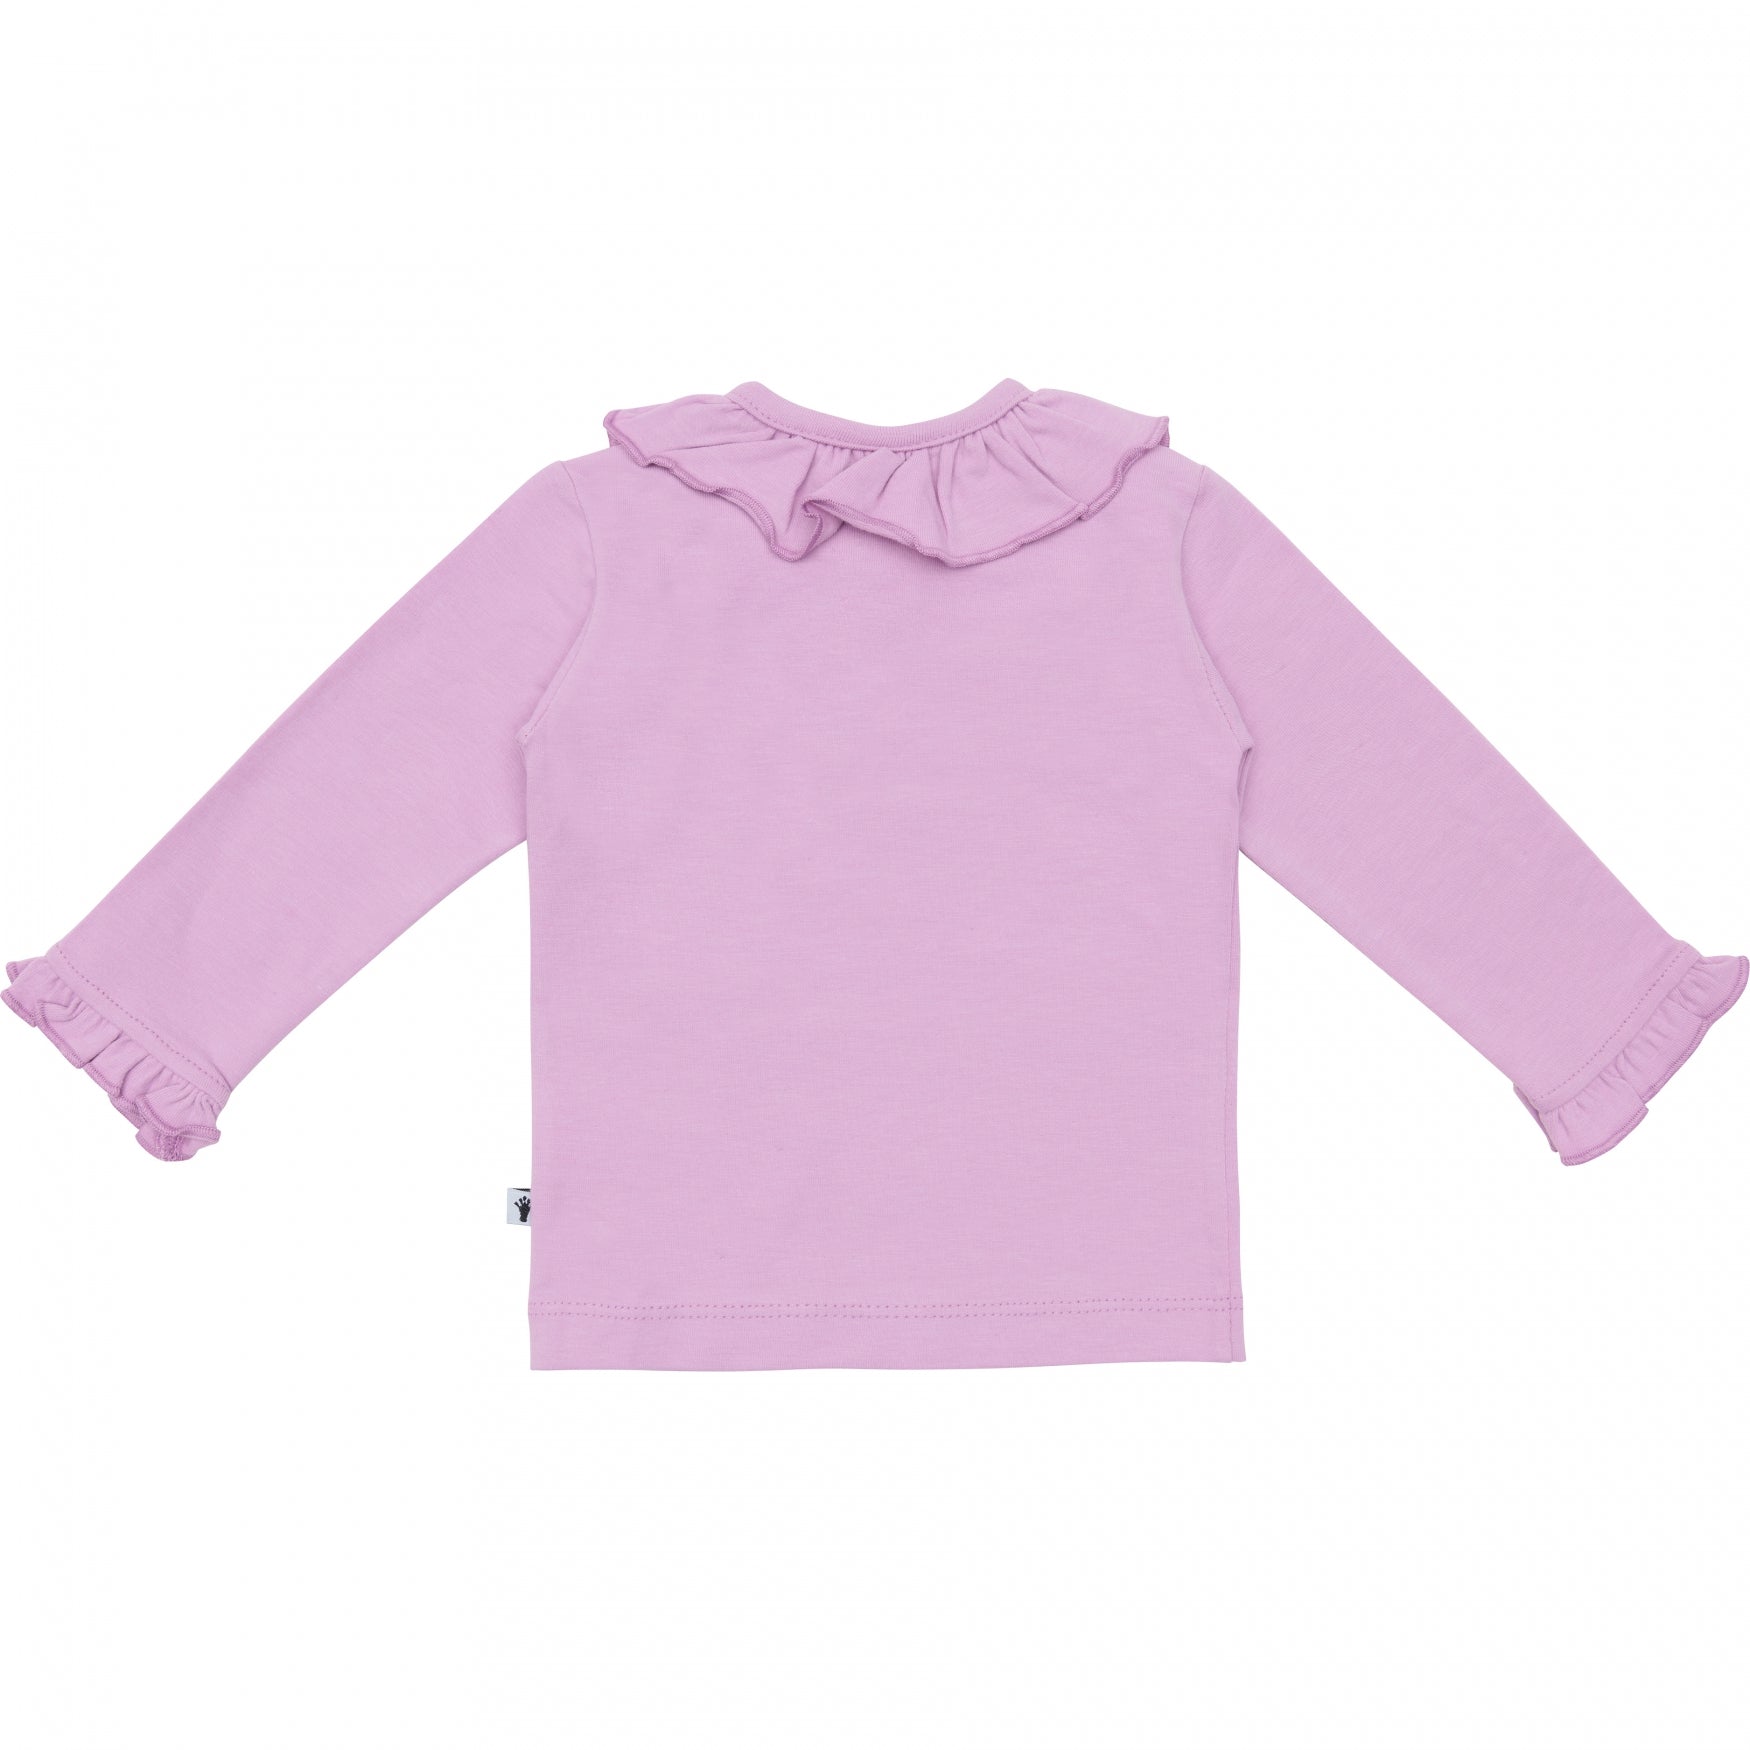 Meisjes Shirt Ruffle Collar van Klein Baby in de kleur Violet Tulle in maat 74.